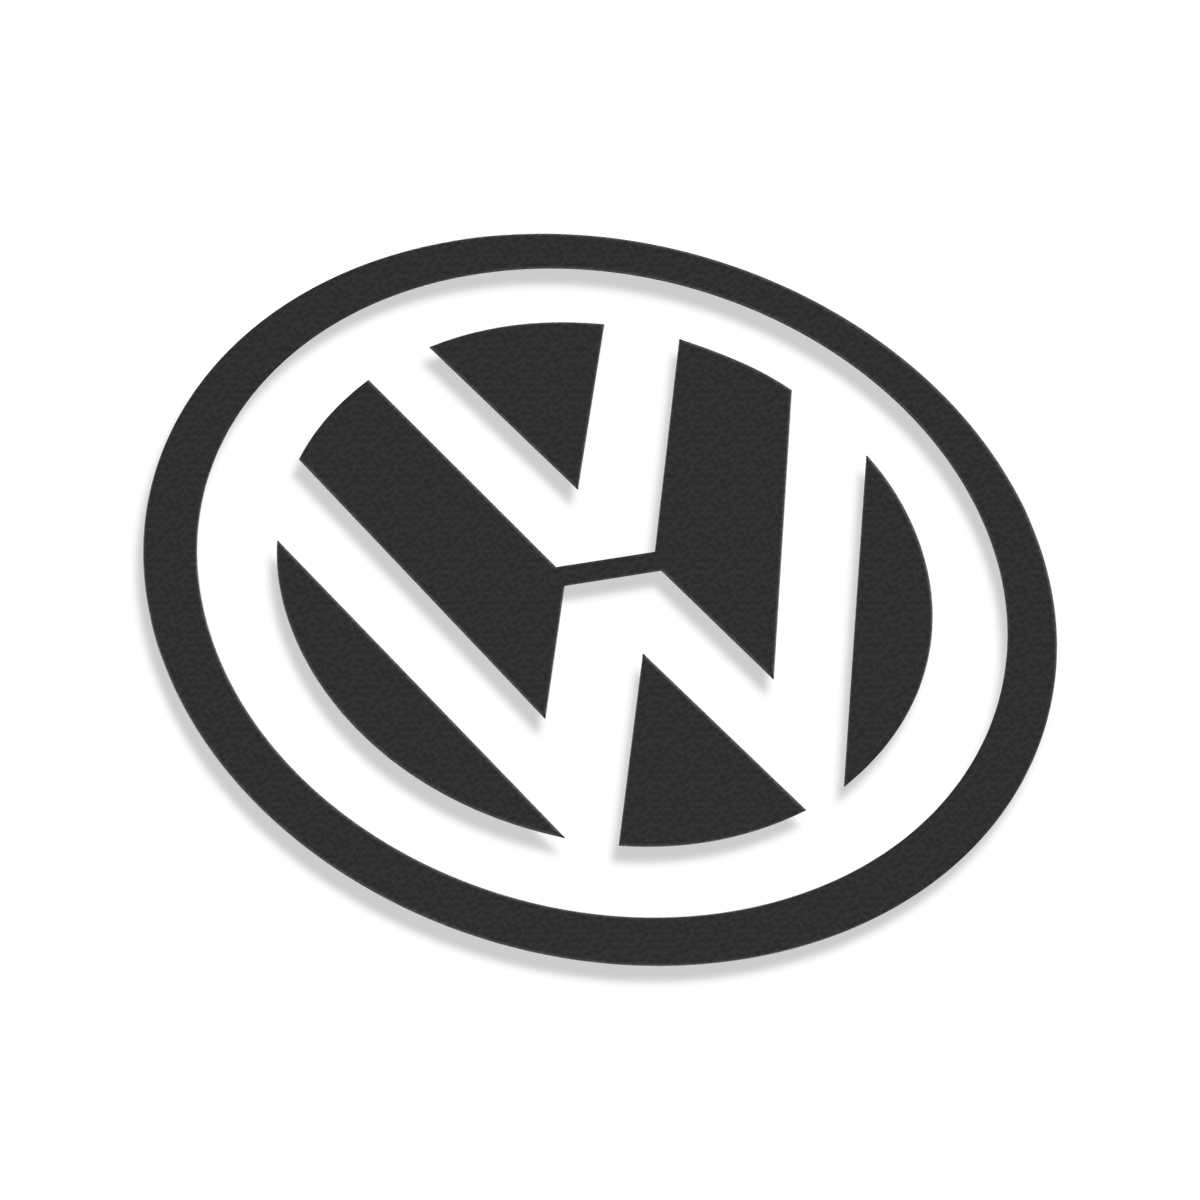 Sticker.Box - Volkswagen Supporter Sticker Im Shop verfügbar! ---  www.stxckxrbxx.de www.stickerbox.shop --- #sticker #stickers #stickershop # aufkleber #aufkleberliebe #volkswagen #volkswagenperformance #vlkswgn  #oracal #secabo #vw #support